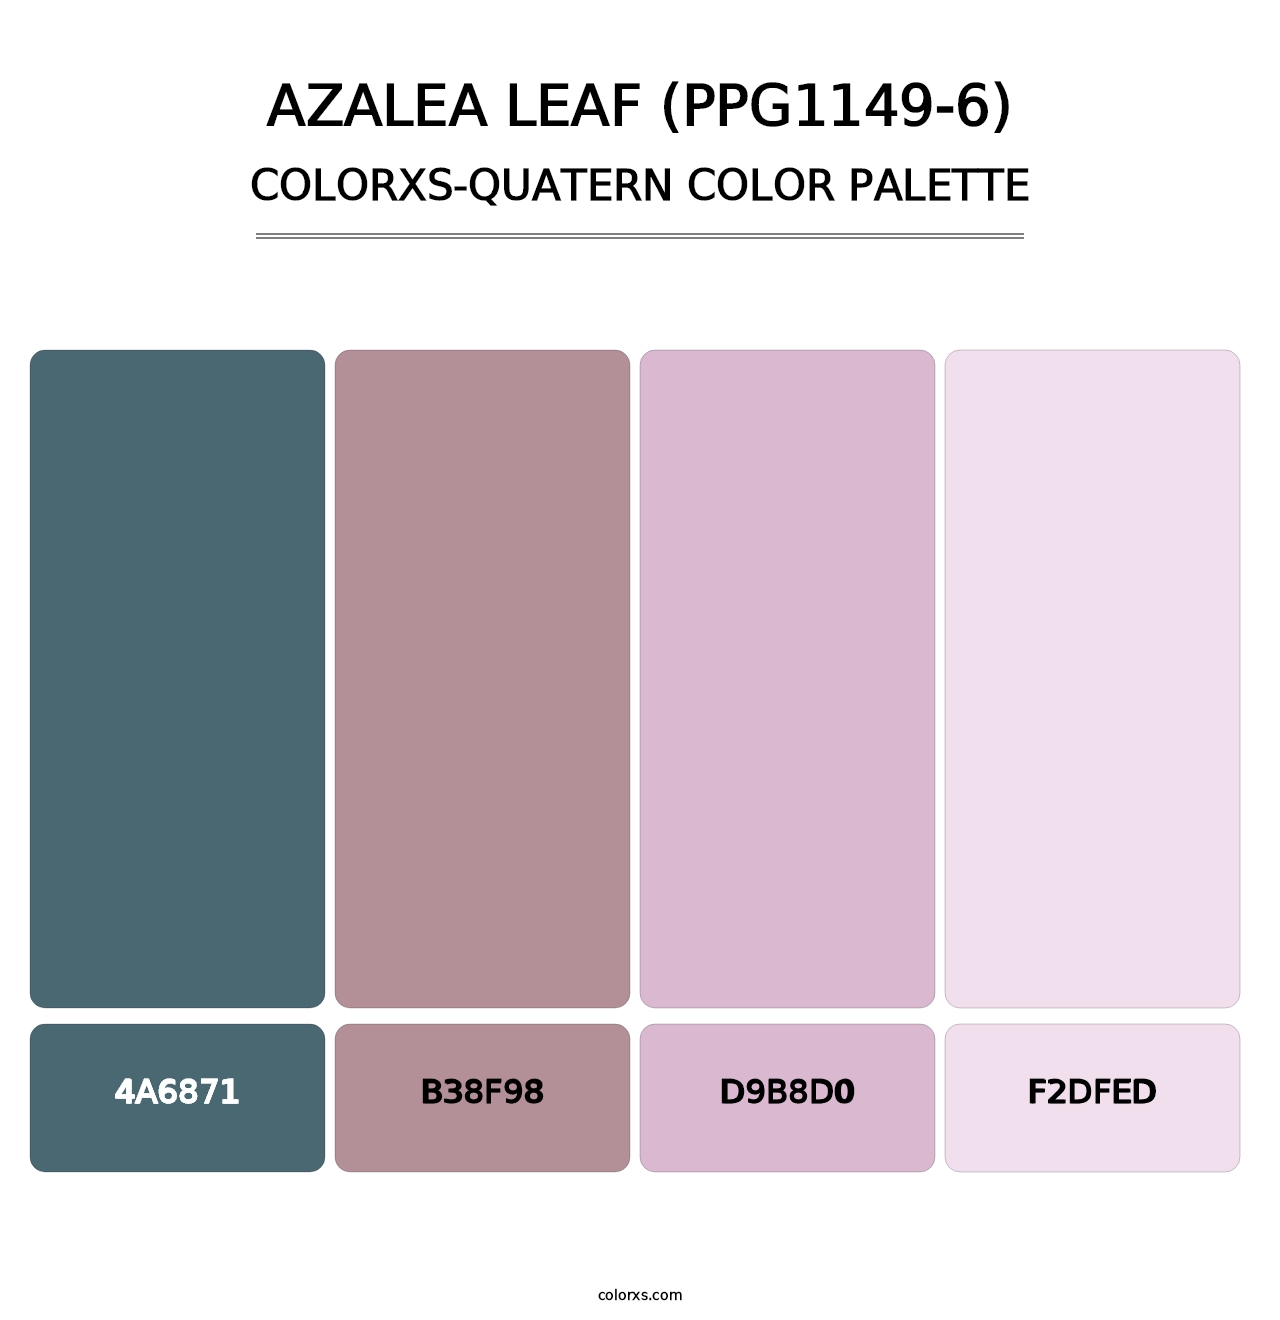 Azalea Leaf (PPG1149-6) - Colorxs Quatern Palette